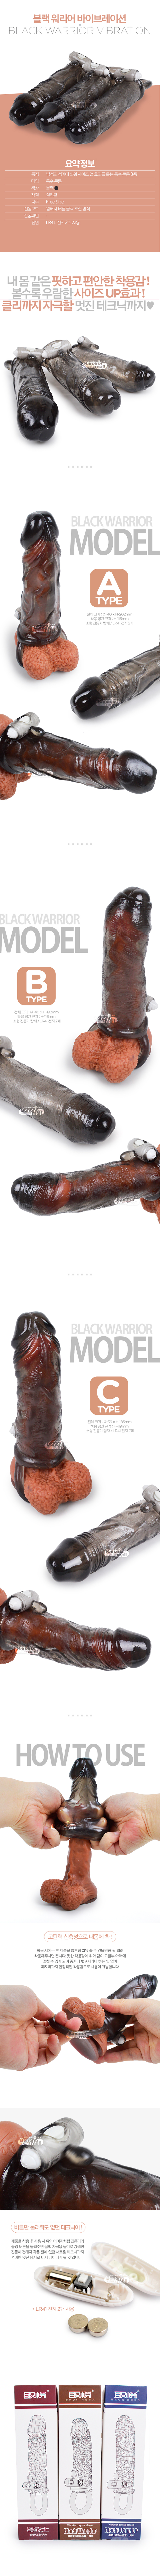 [원버튼 진동] 블랙 워리어 바이브레이션 크리스탈 슬리브(Black Warrior Vibration Crystal Sleeve) - 6922359302373